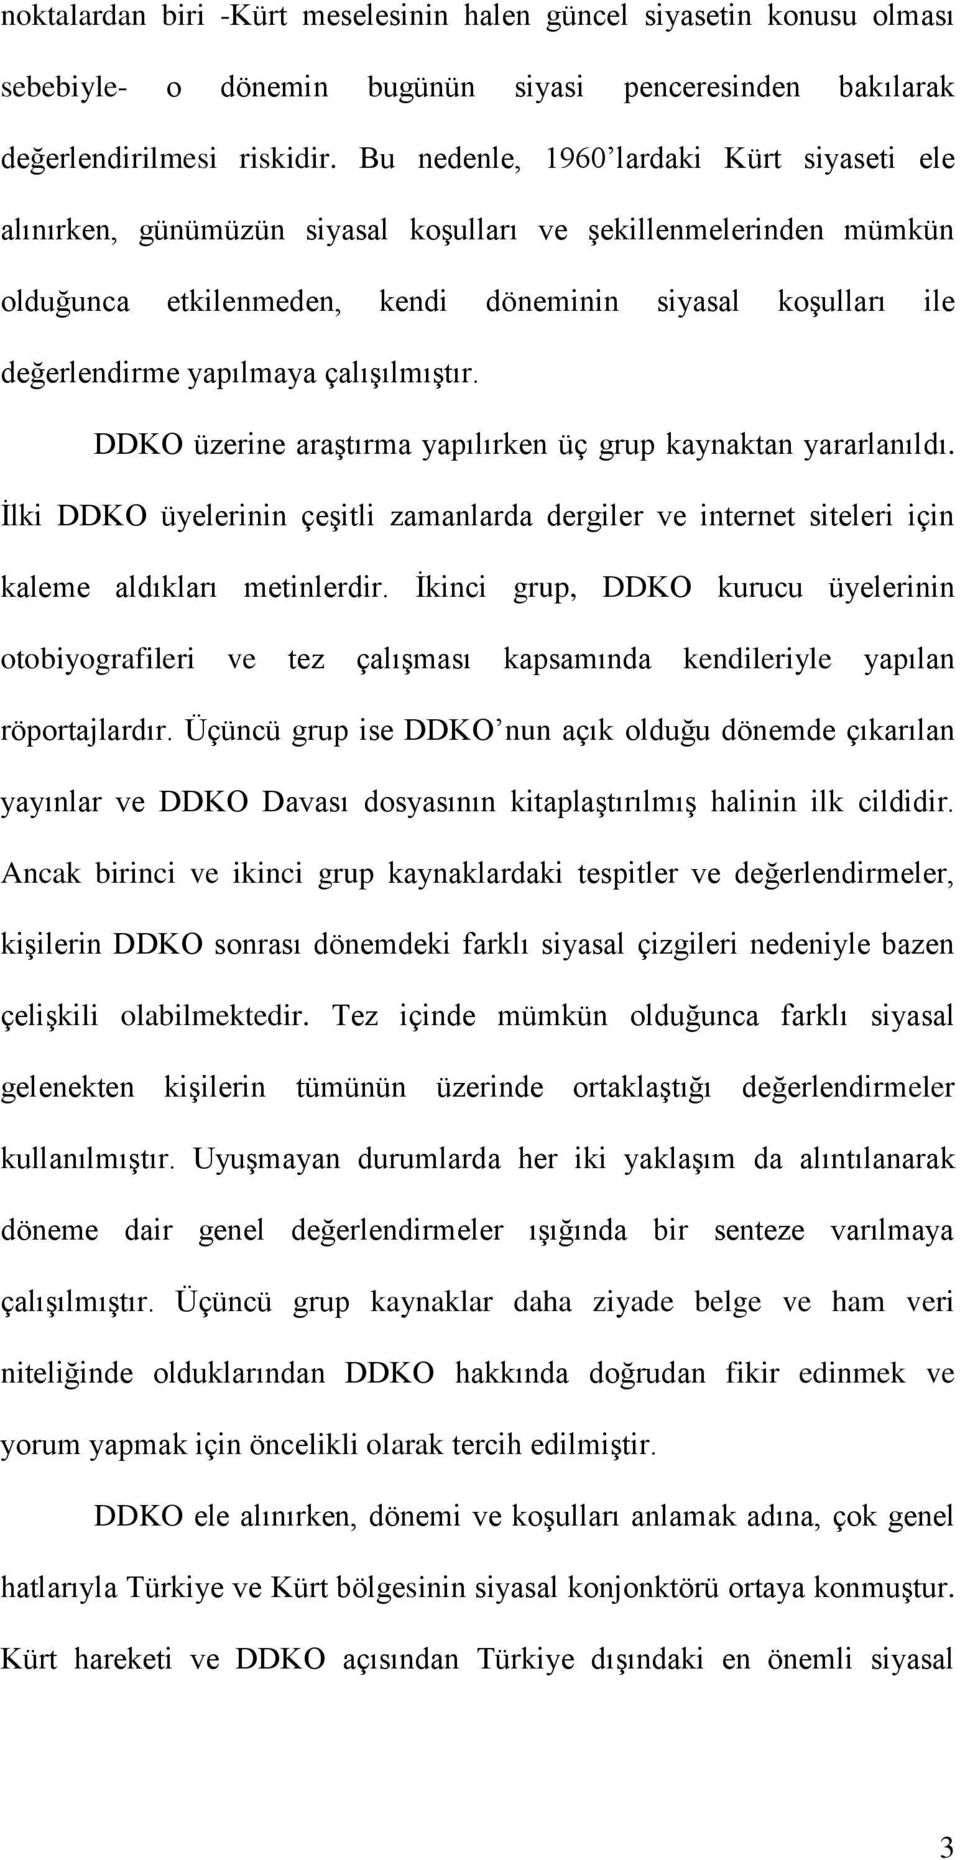 çalışılmıştır. DDKO üzerine araştırma yapılırken üç grup kaynaktan yararlanıldı. İlki DDKO üyelerinin çeşitli zamanlarda dergiler ve internet siteleri için kaleme aldıkları metinlerdir.